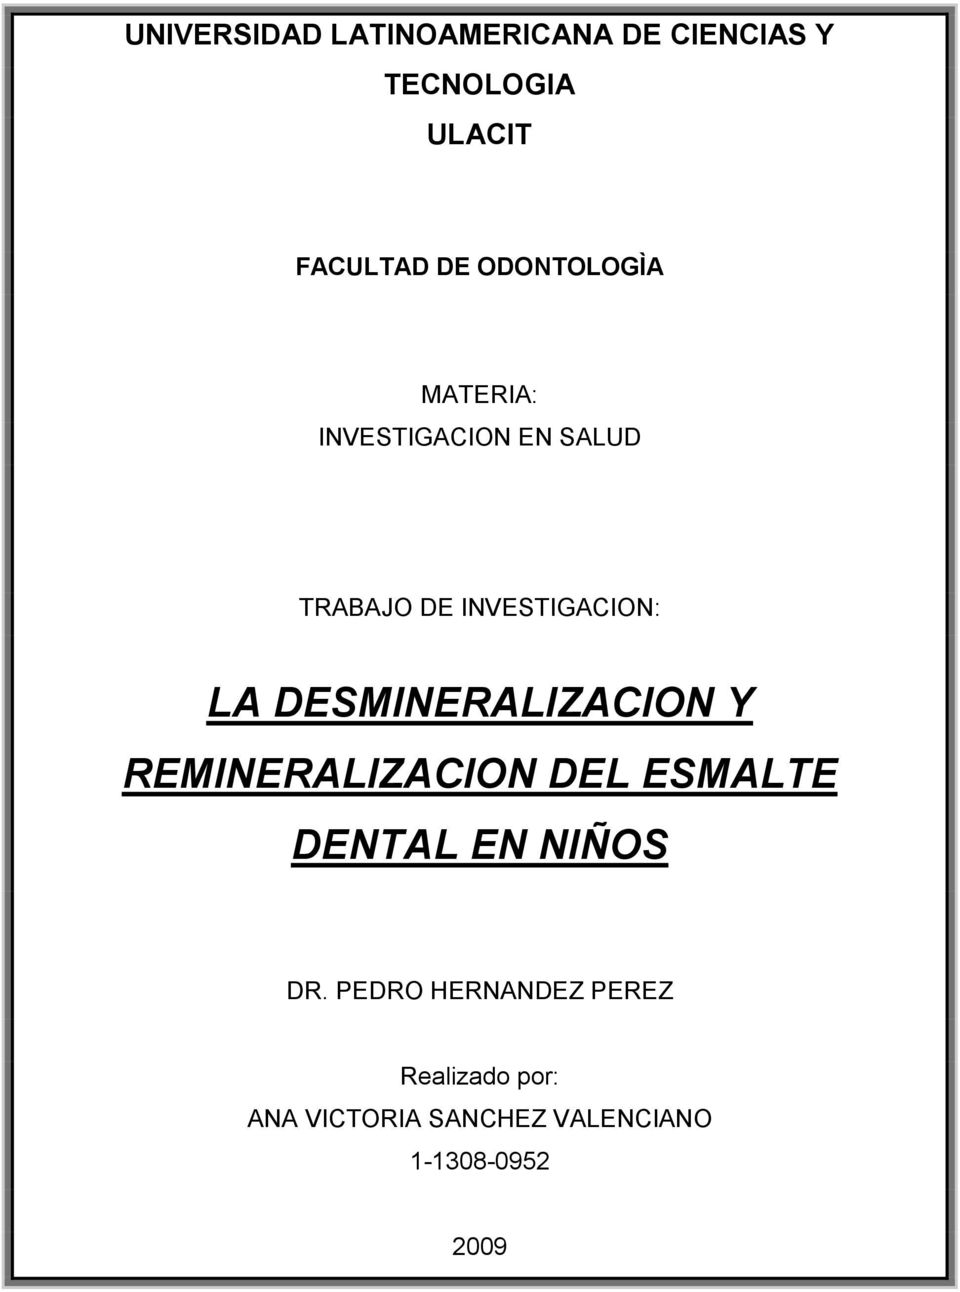 DESMINERALIZACION Y REMINERALIZACION DEL ESMALTE DENTAL EN NIÑOS DR.